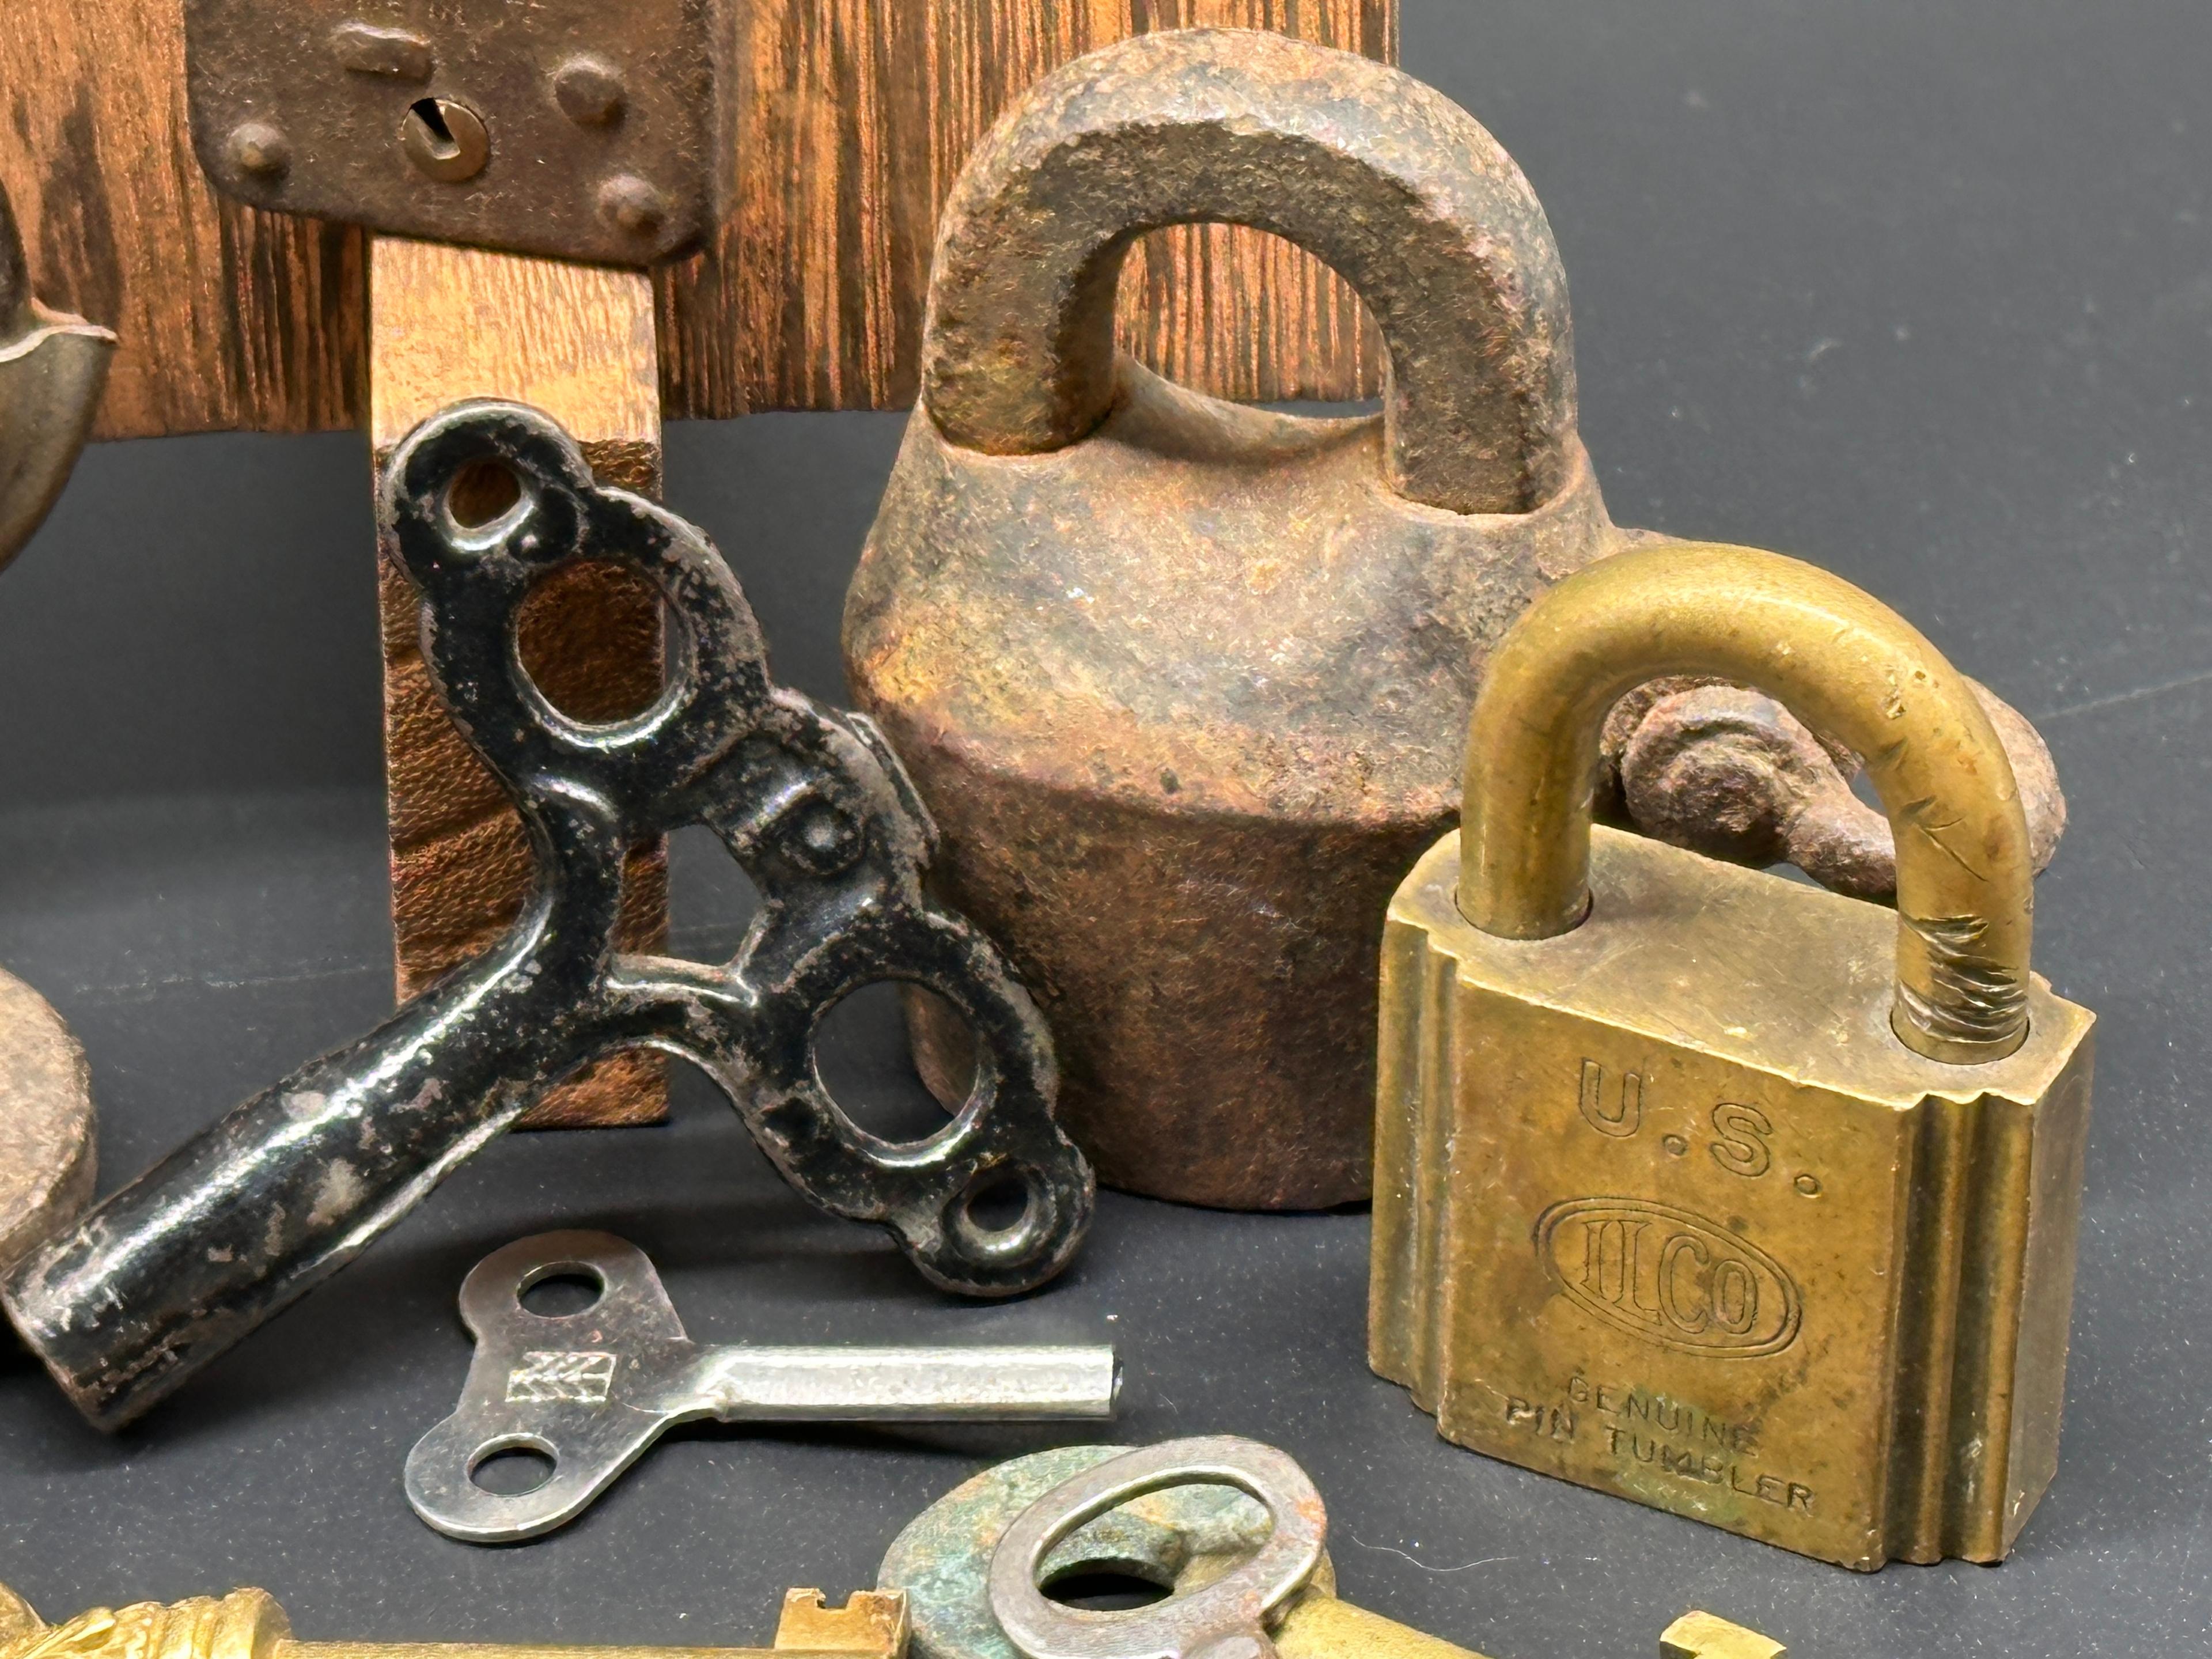 Misc. Vintage Locks and Keys